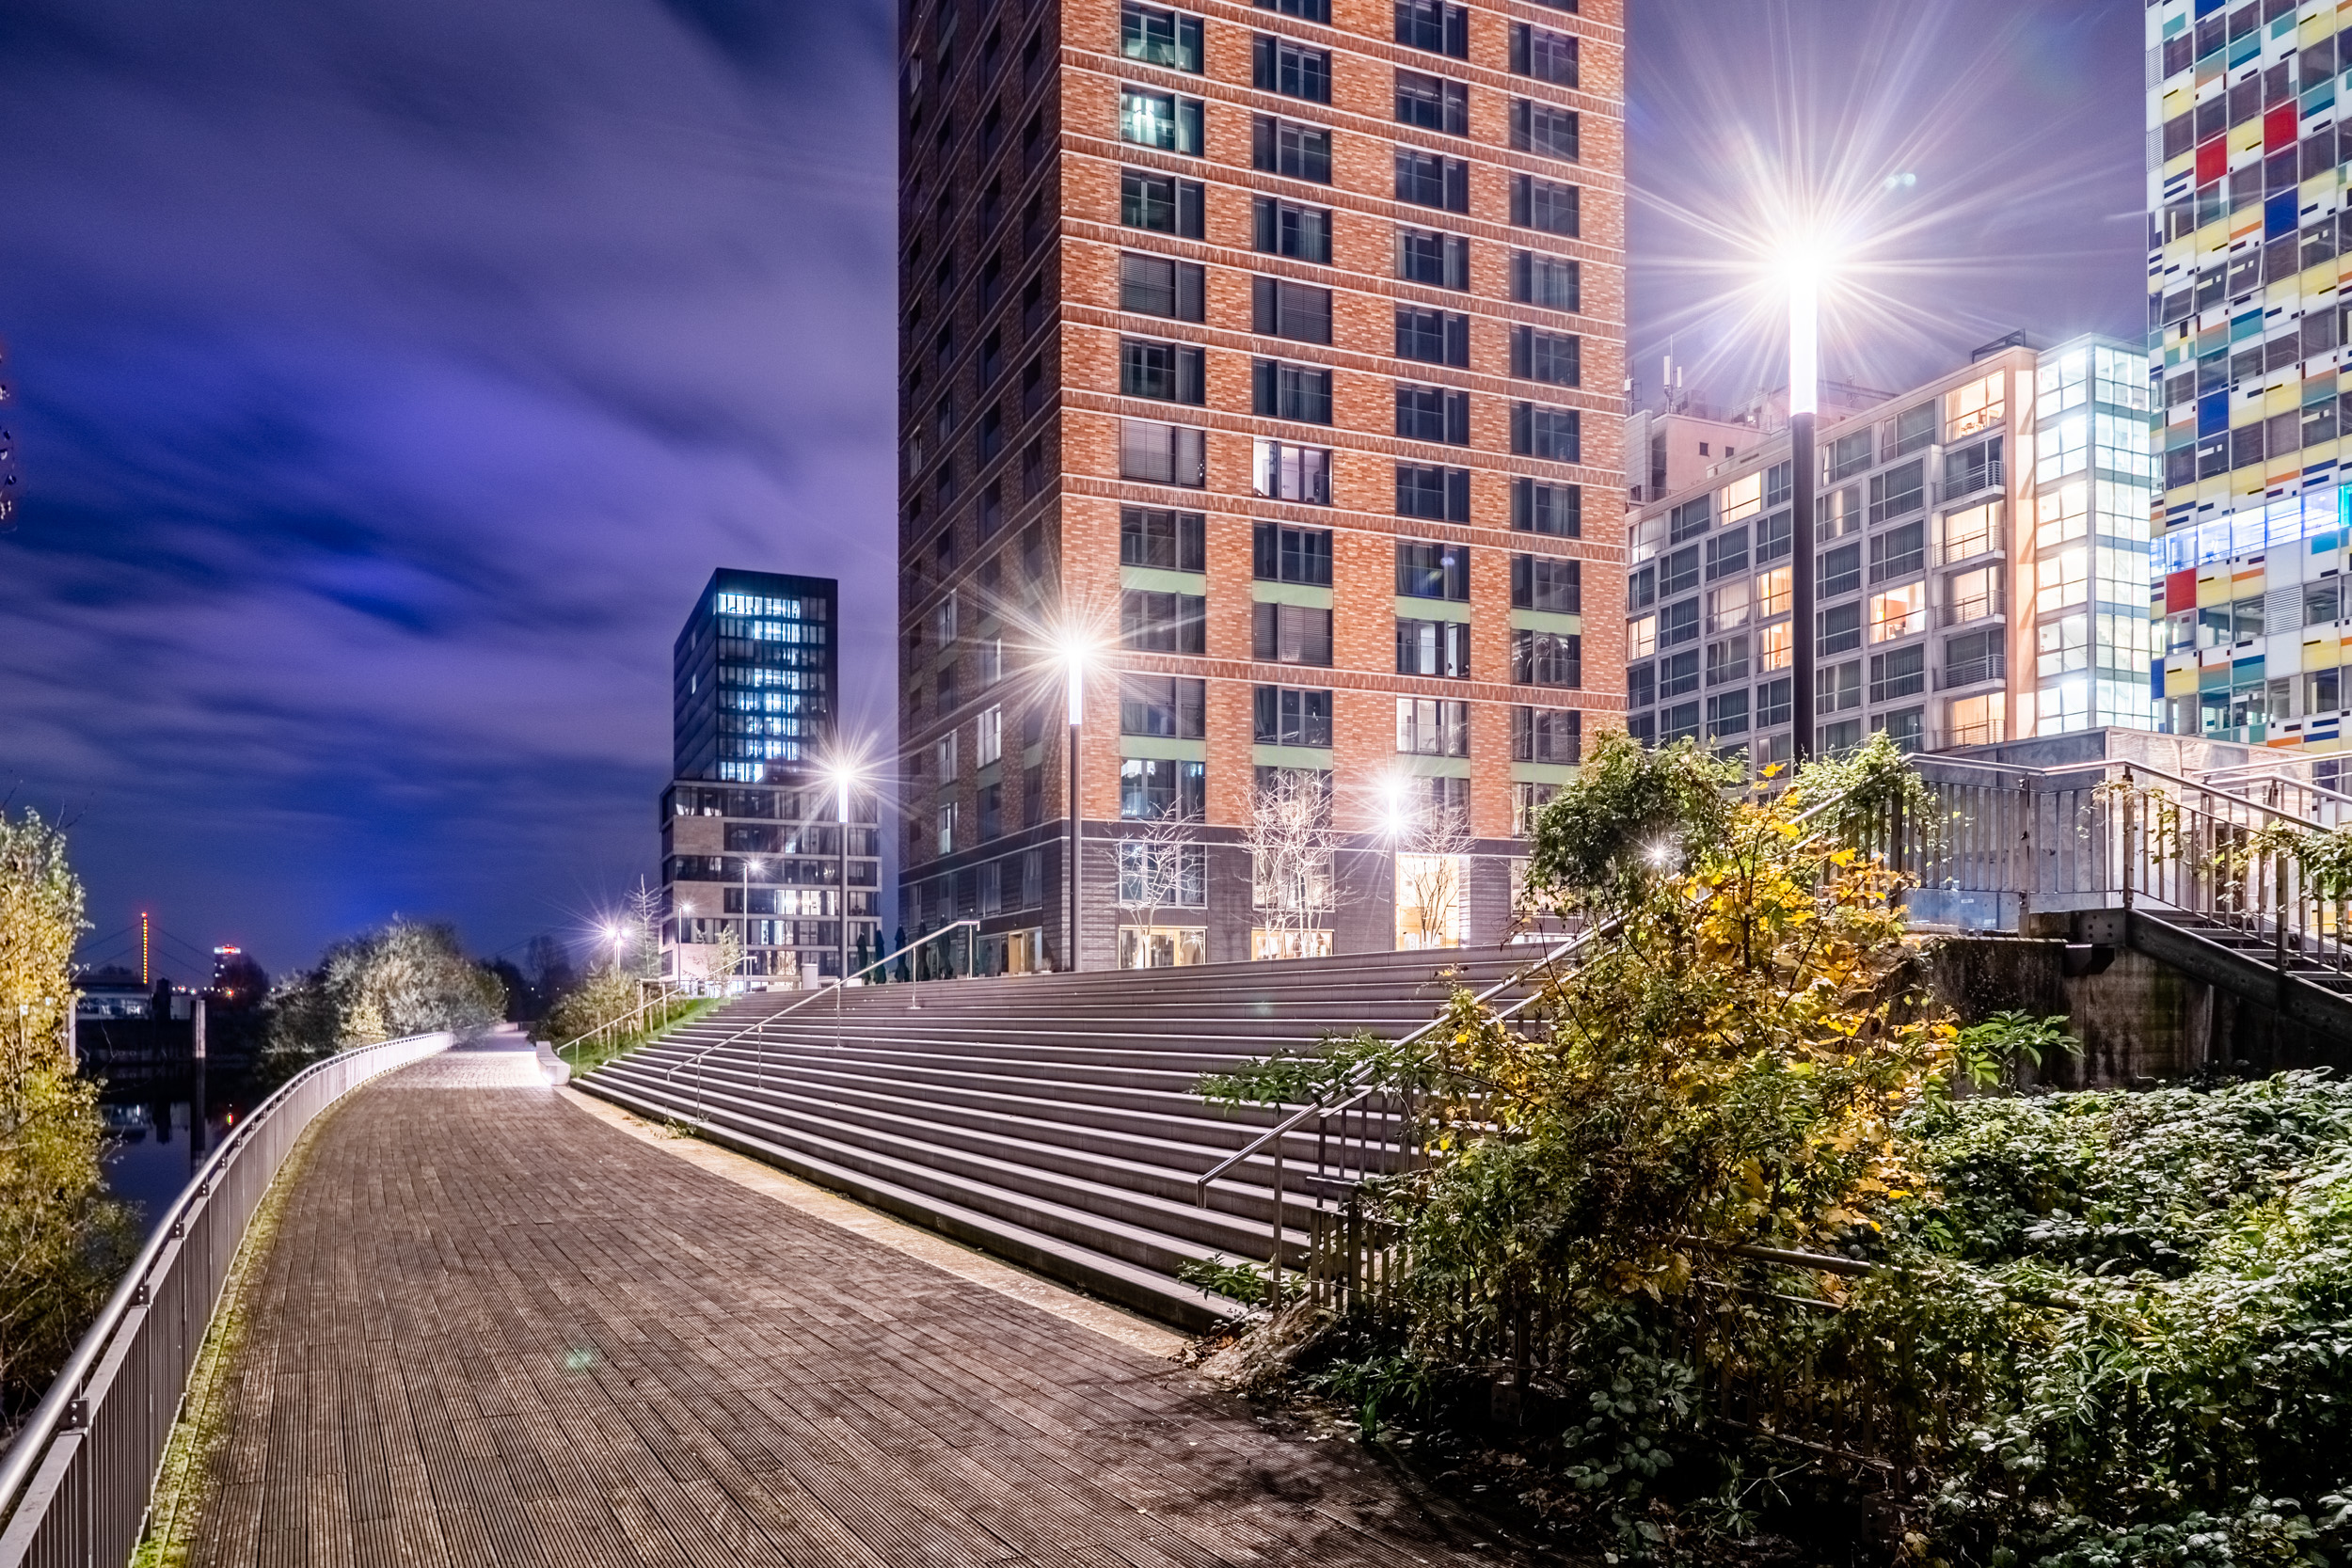 Architektur Nachtaufnahme smarte LED Beleuchtung im Medienhafen Düsseldorf